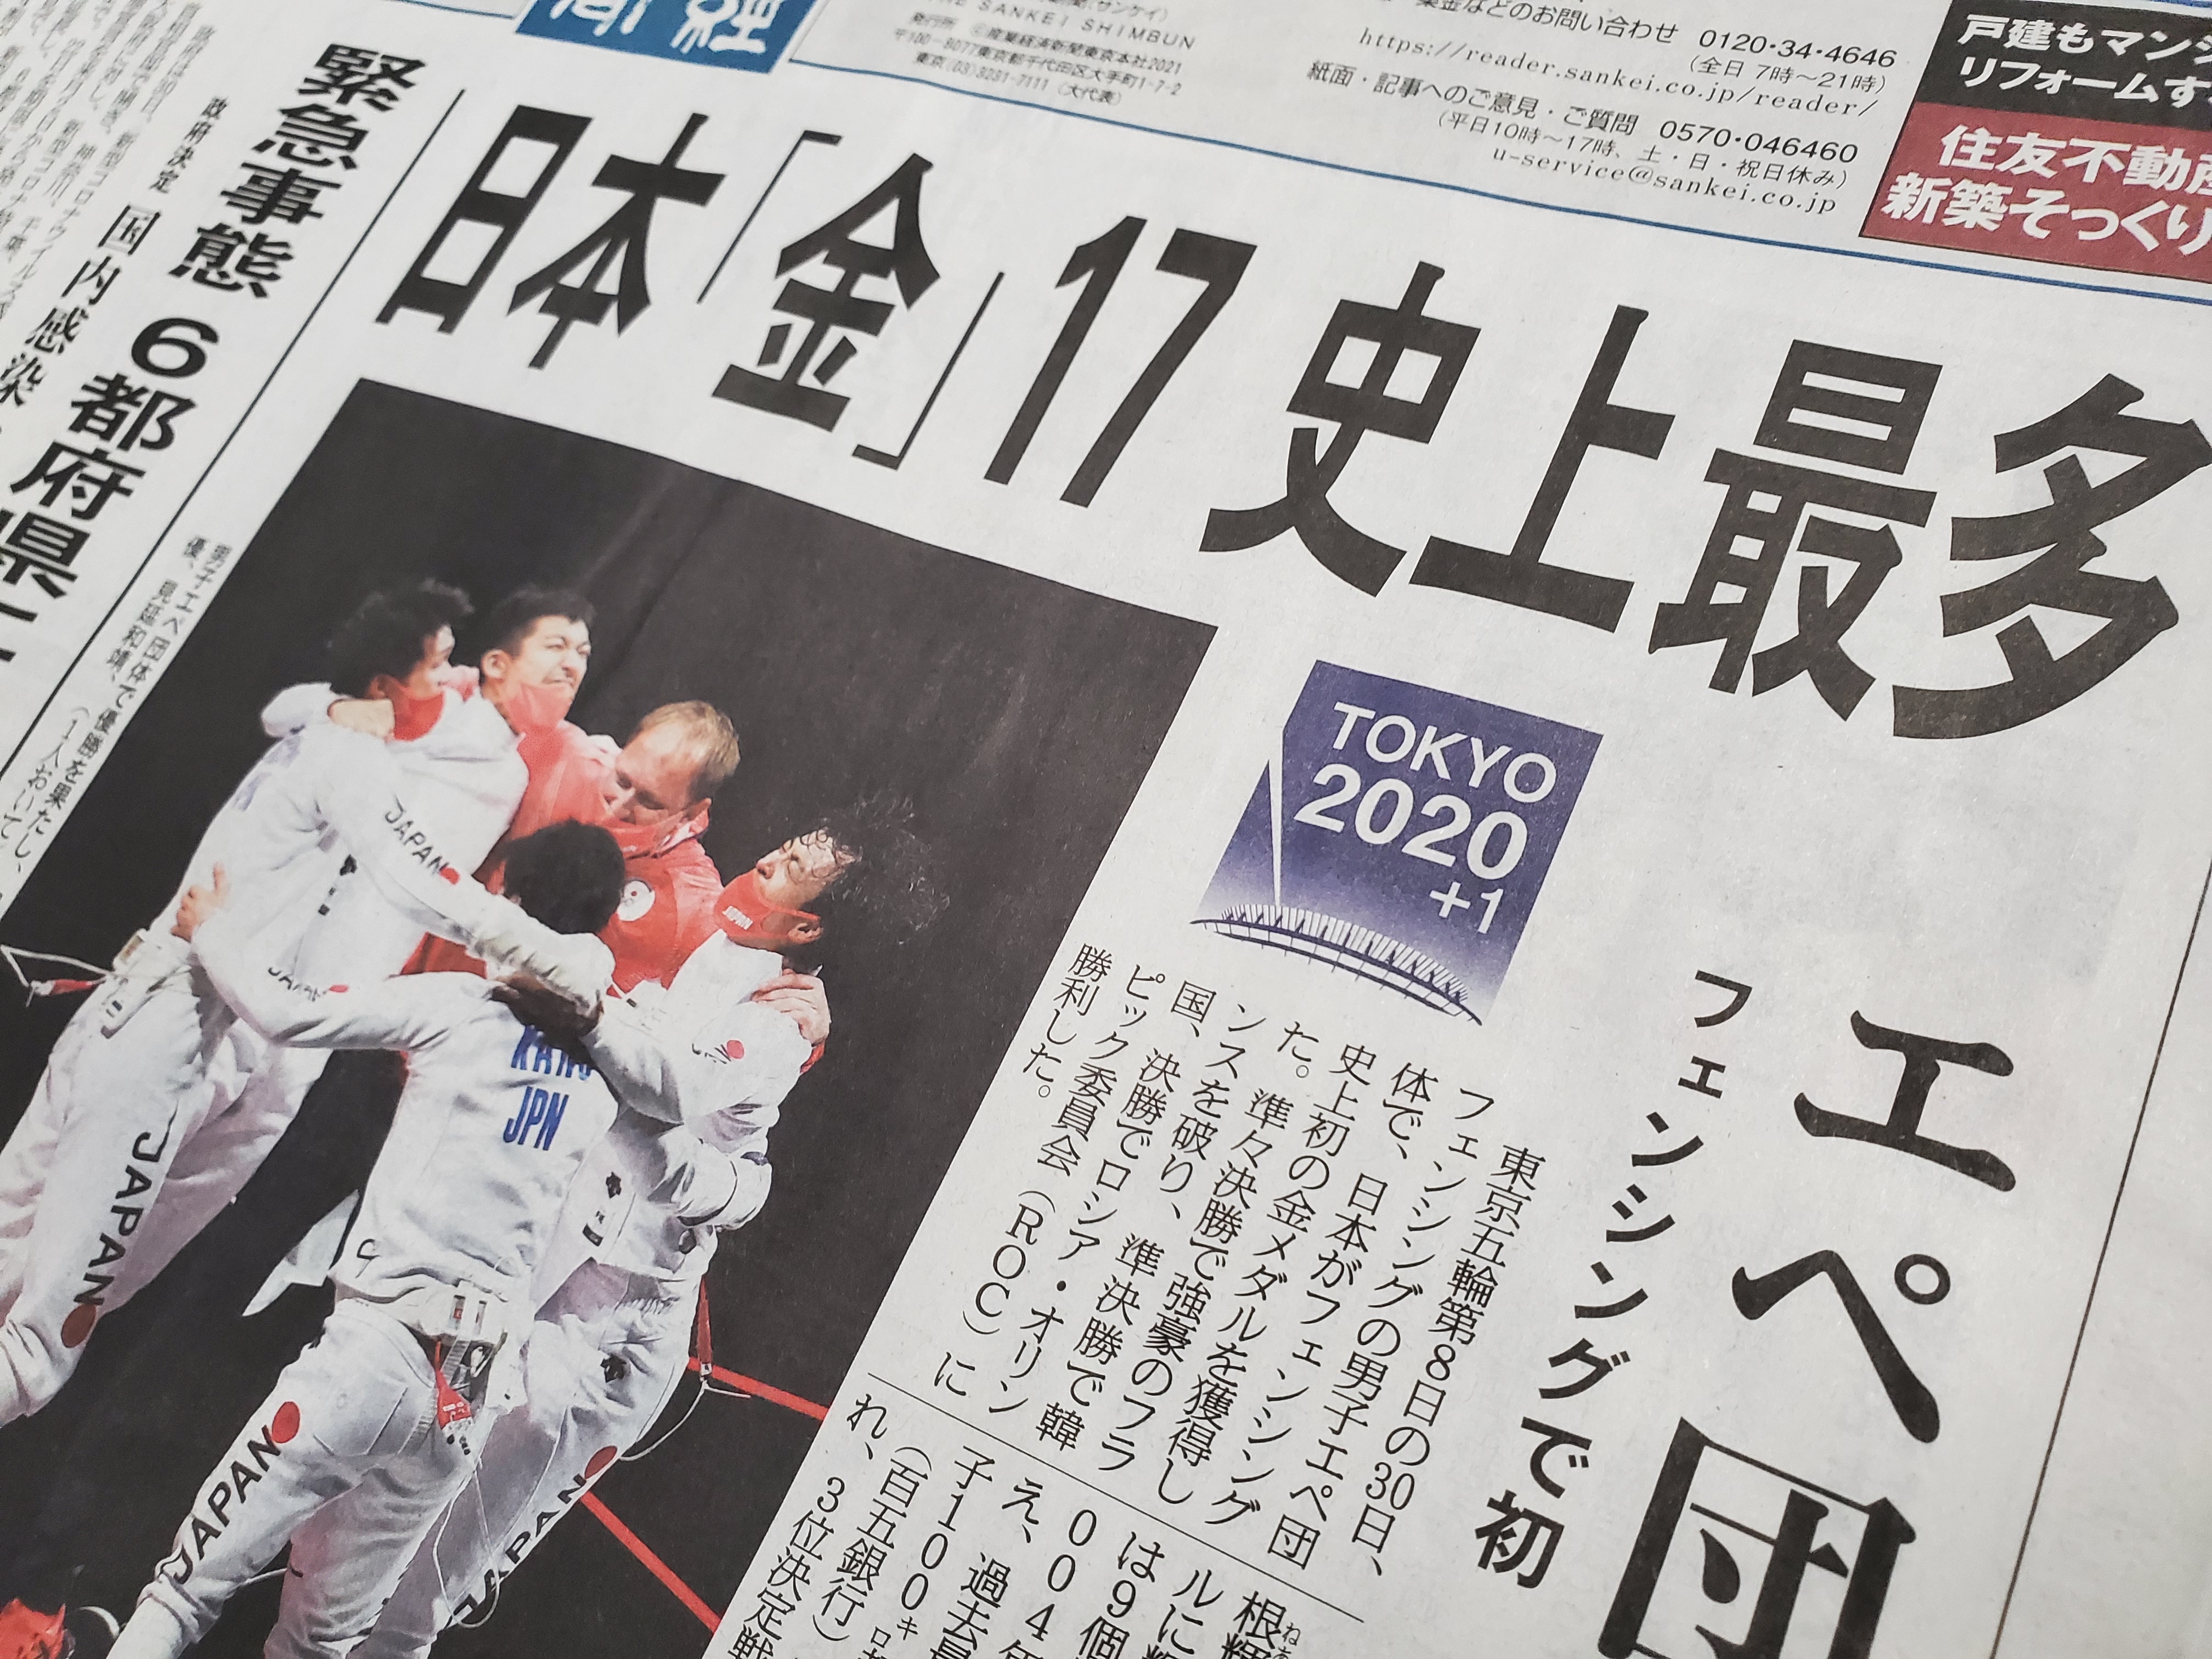 일본 산케이신문이 7월 31일 자 1면 머릿기사로 도쿄올림픽에서 역대 최다인 금메일 17개를 획득했다는 소식을 전하고 있다.